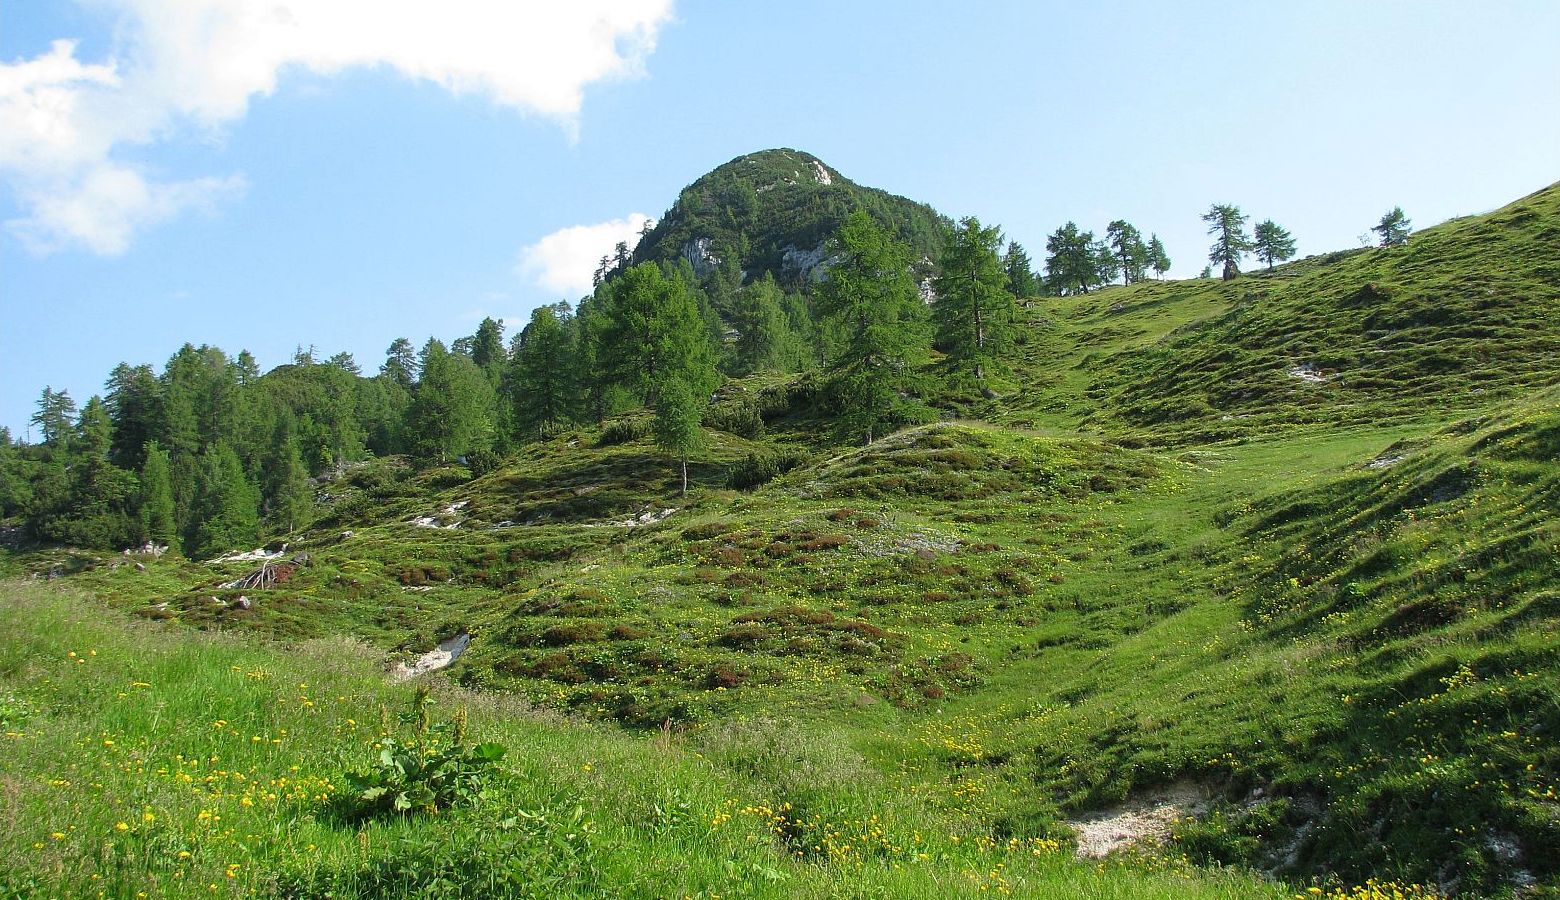 Steza se vije zložno in zahodno po kateri dobro uro kasneje mimo obnovljene lovske koče, kjer se gozdna steza obrne vzhodno in v kratkem pripelje na spodnje travnike planine Krstenica ...